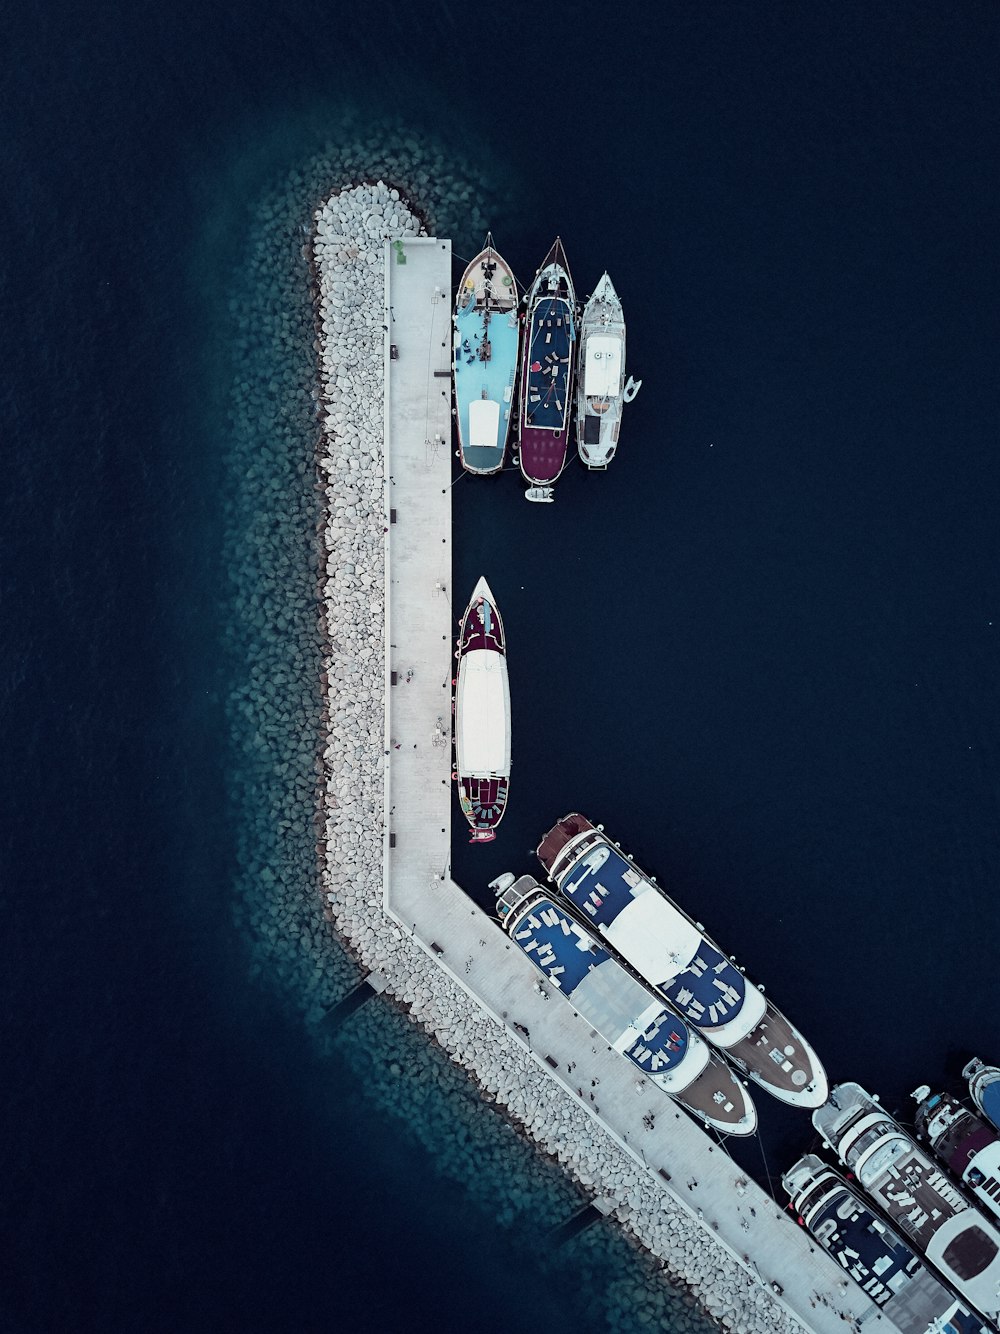 Fotografía aérea del puerto del barco